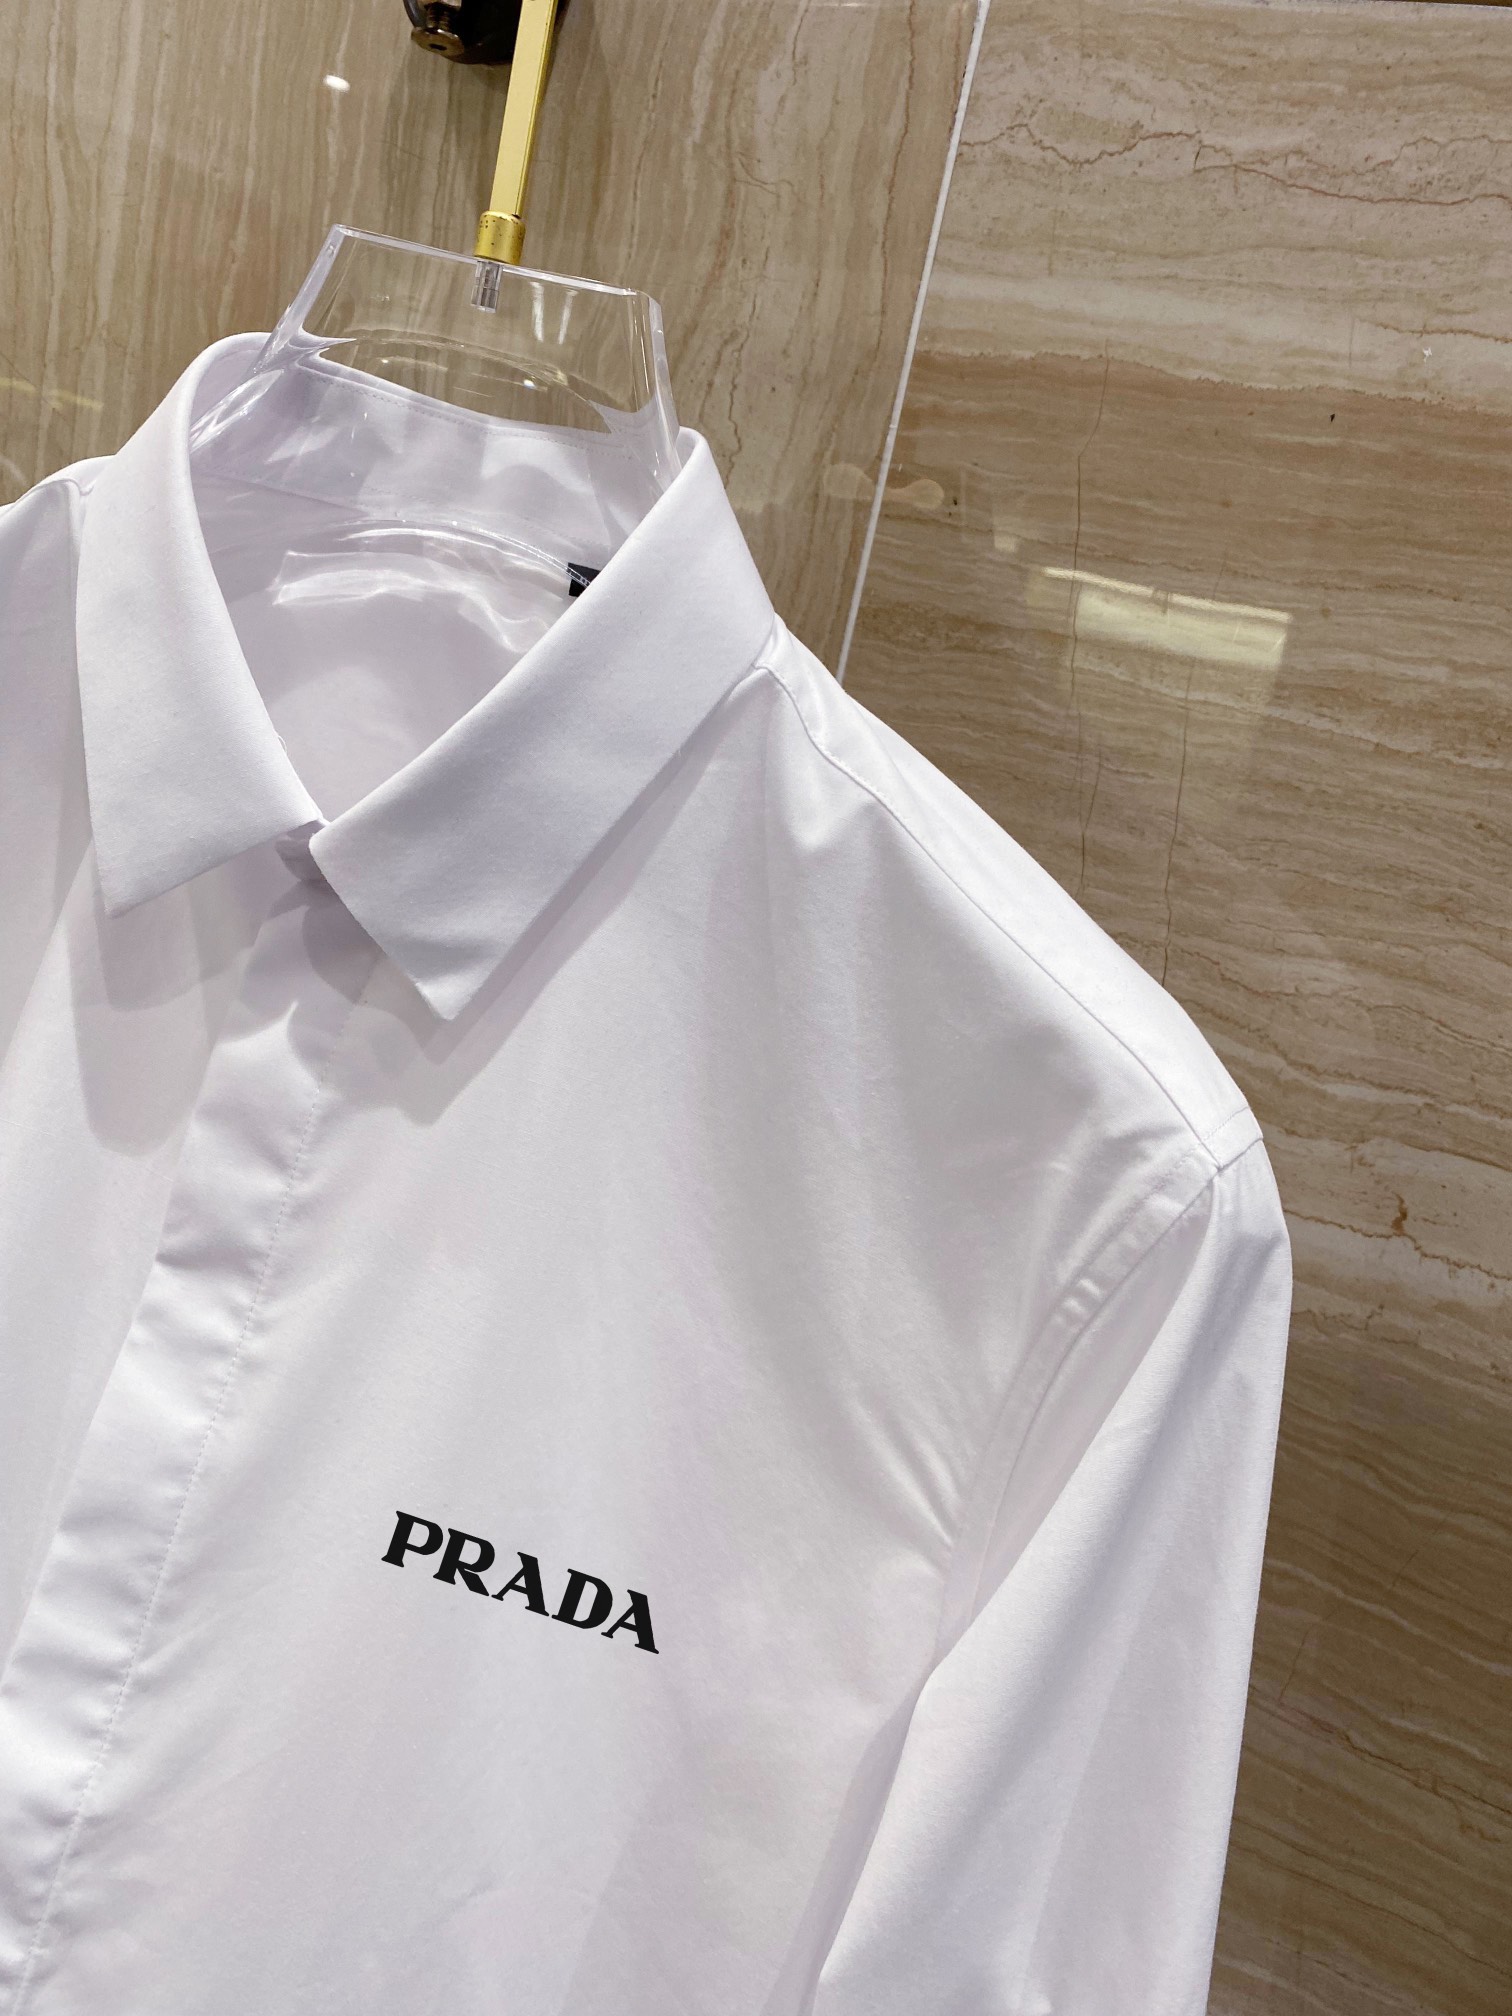 素敵な ヴェルサーチ ワイシャツコピー 高級品 トップス ビジネス ゆったり 人気新作 シンプル 2色可選 ホワイト_3